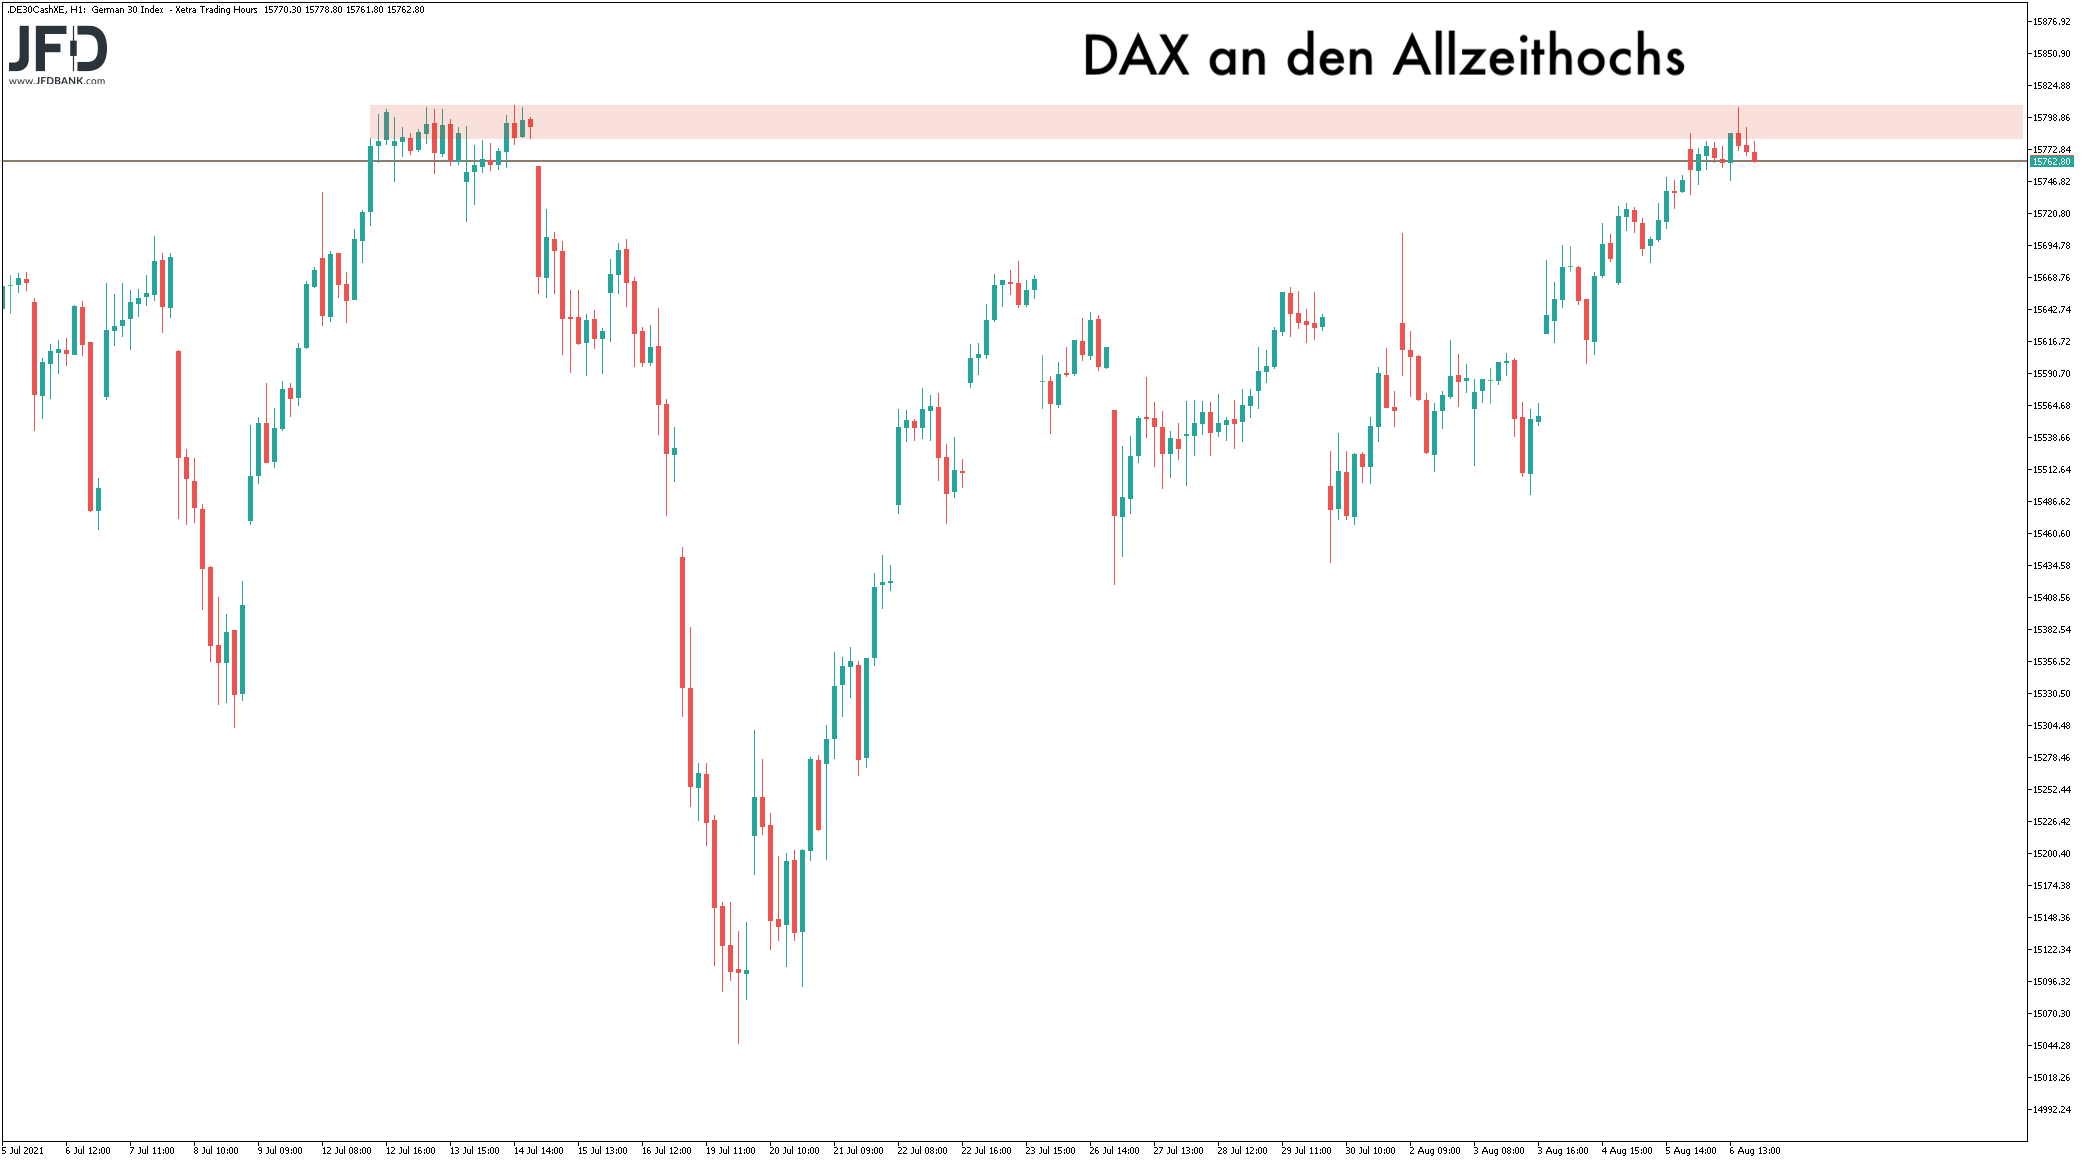 DAX-Rekordhoch-im-Fokus-Wochenstart-könnte-Signal-geben-Kommentar-JFD-Bank-GodmodeTrader.de-2